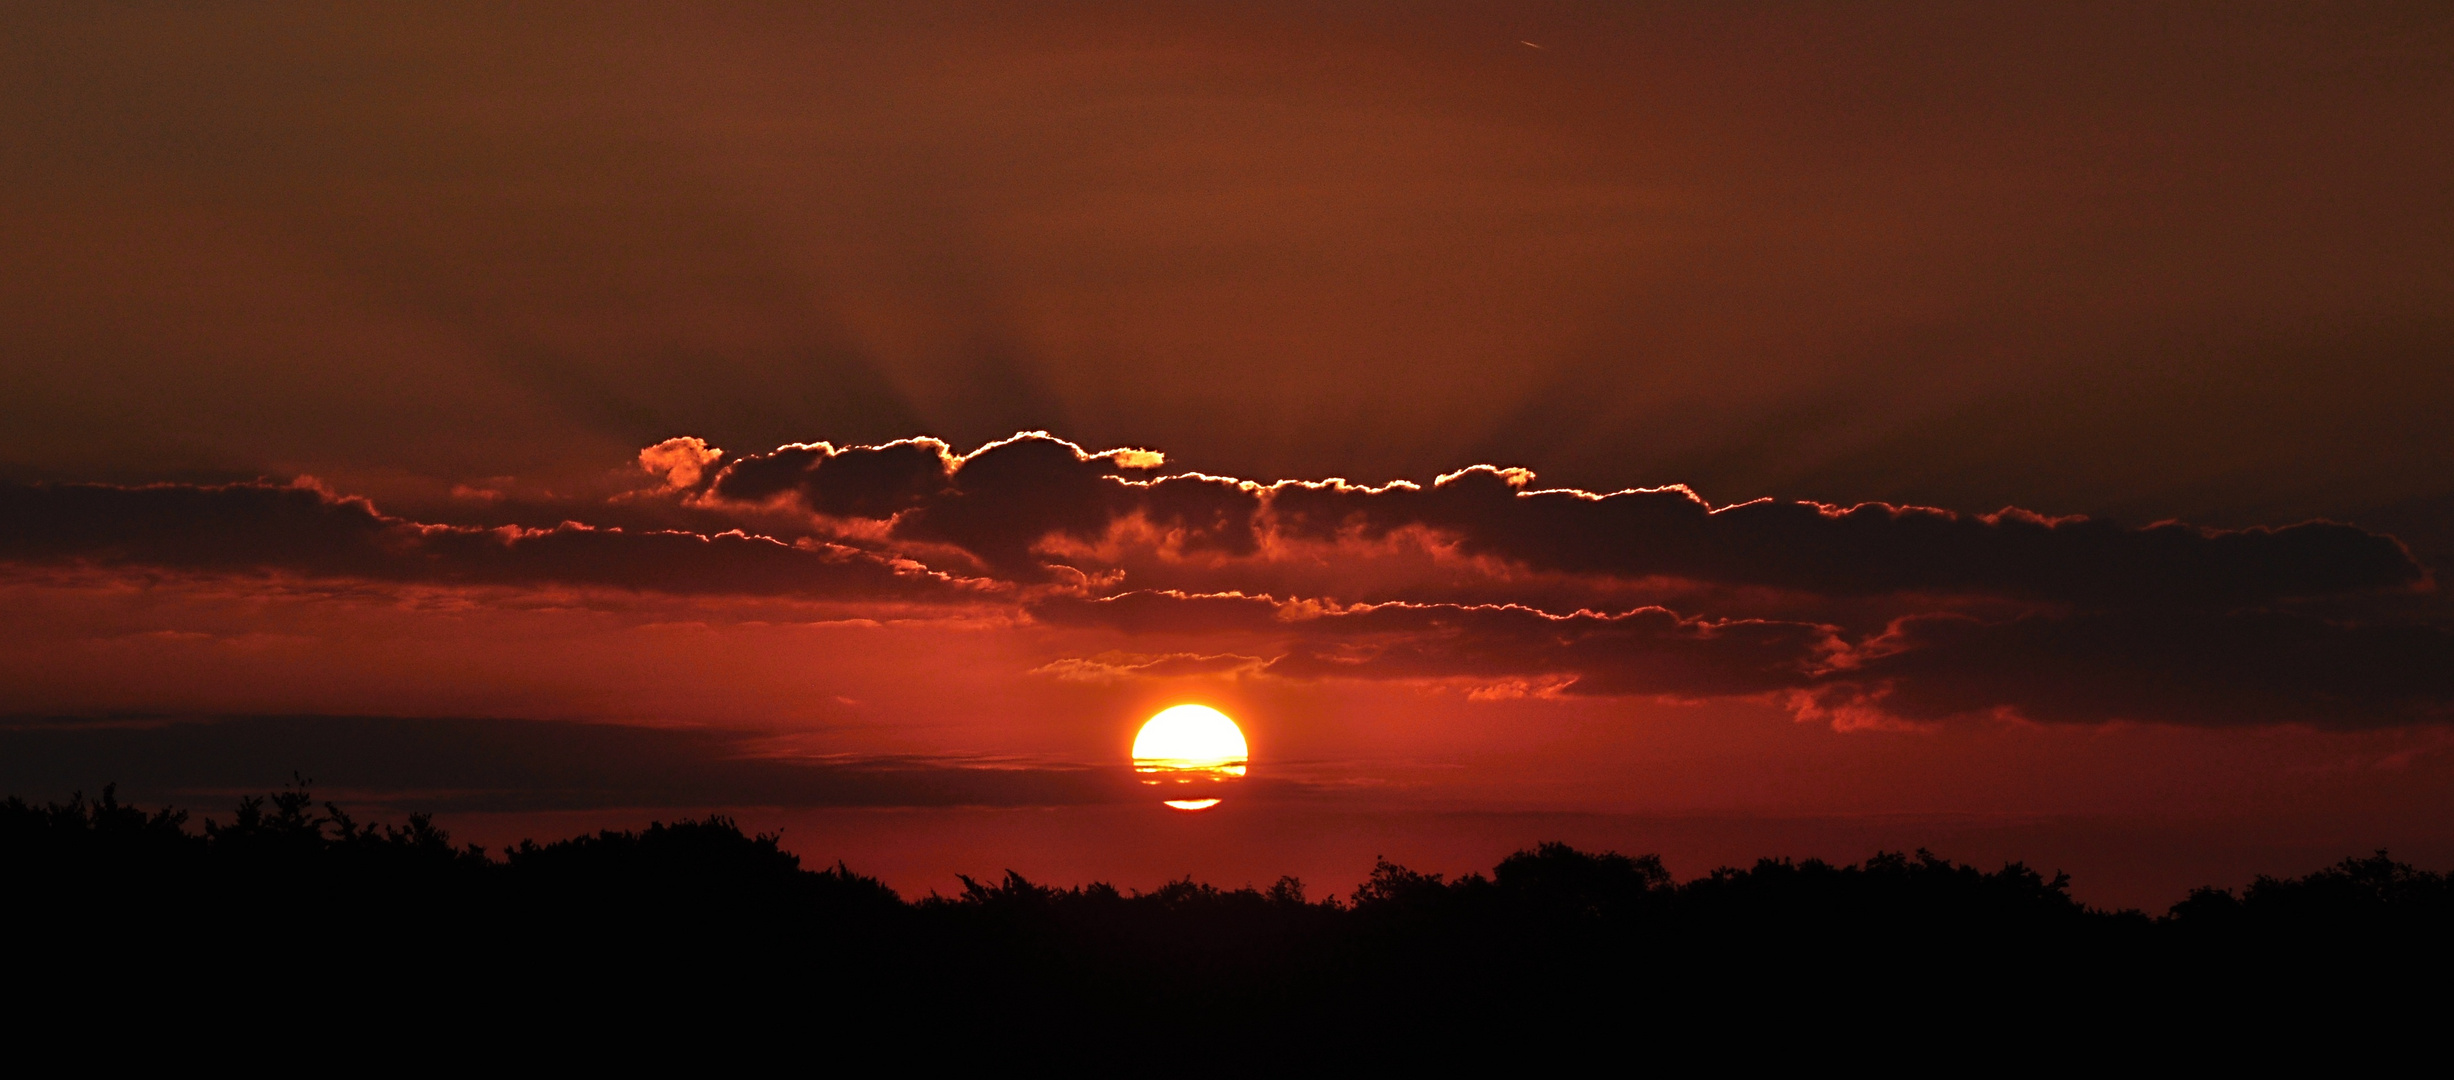 Sonnenaufgang am 15.08.13 um 06:19 im Osten von Hannover